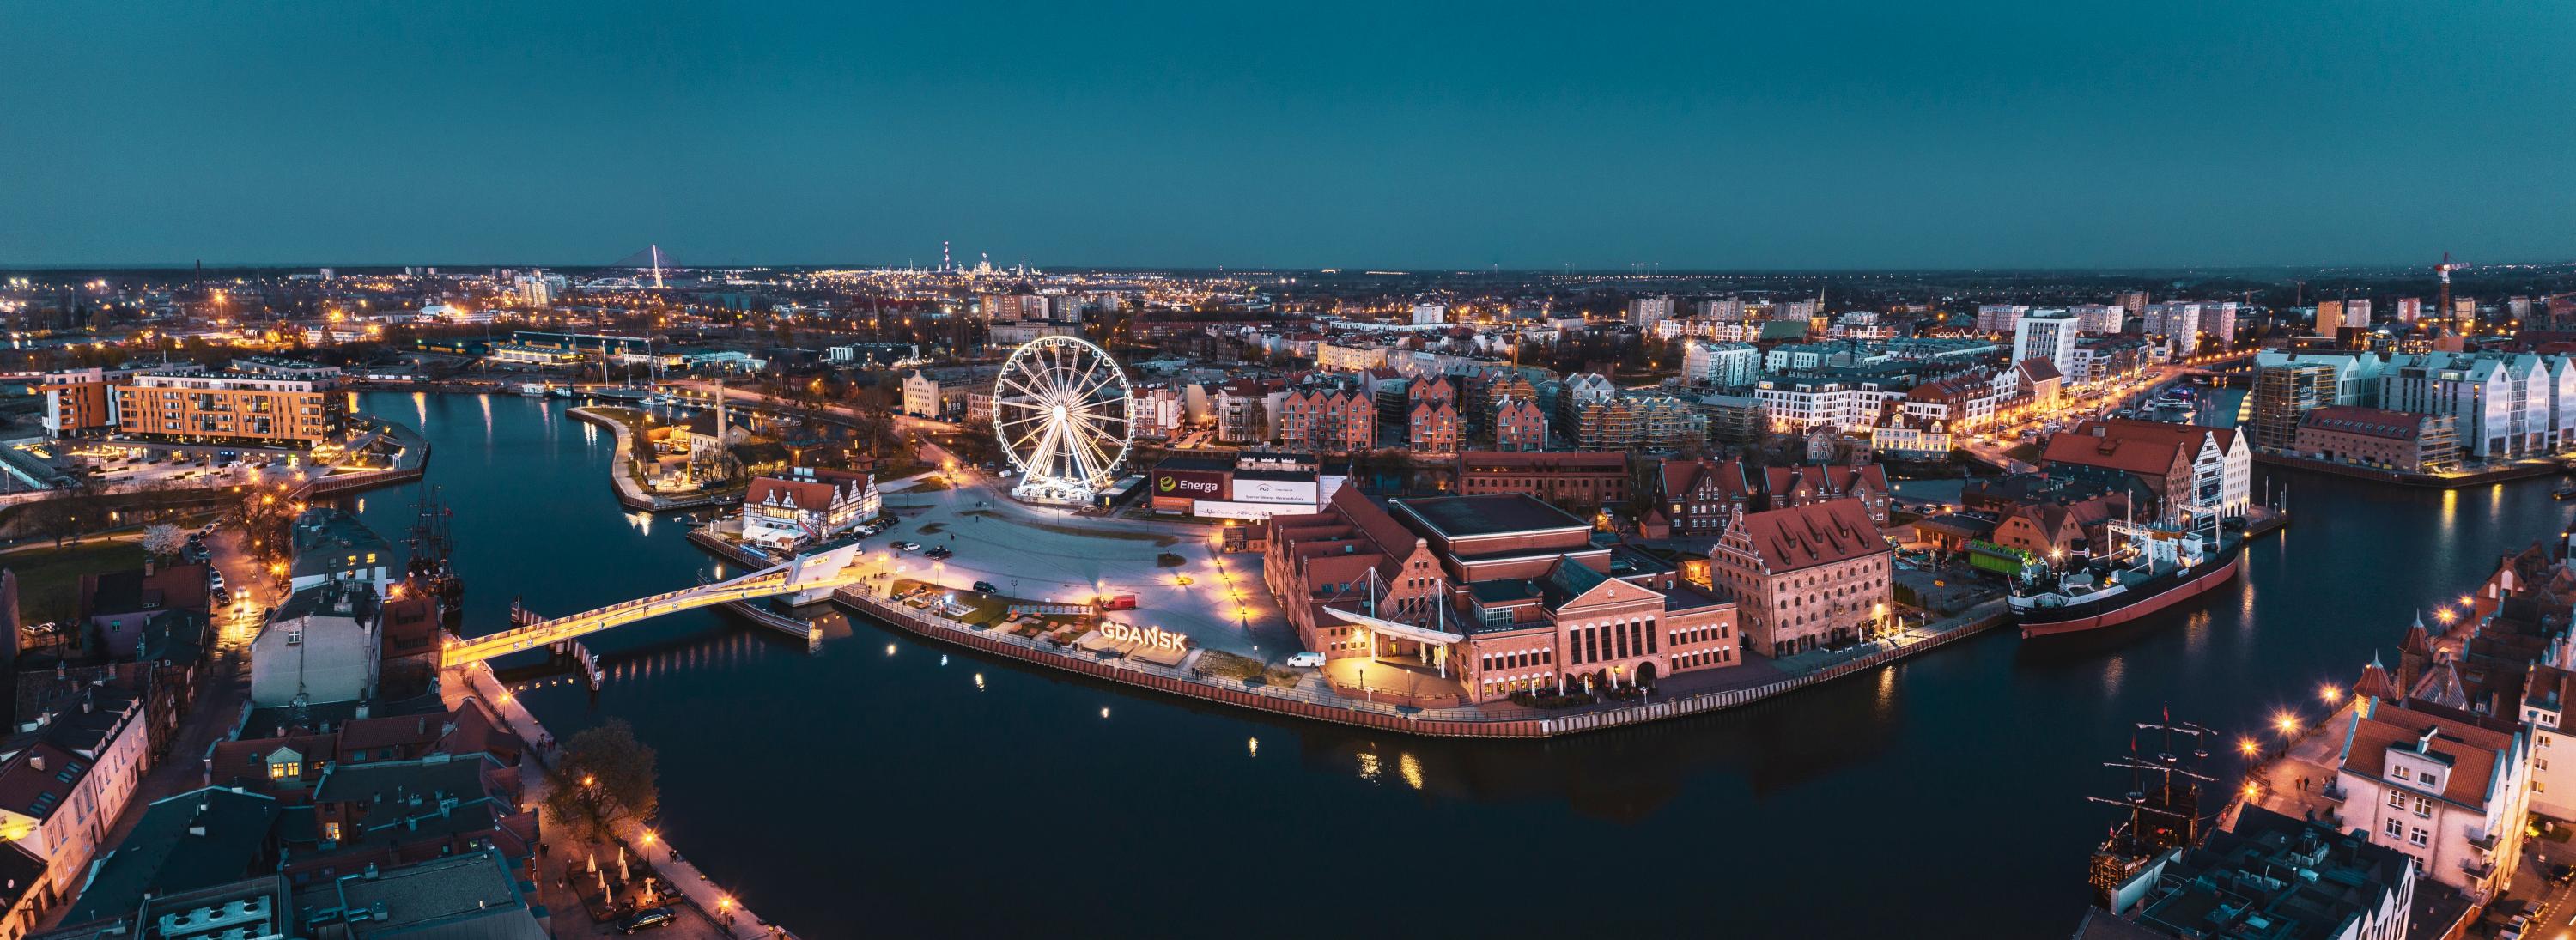 Panorama Gdańska z zabytkami i budynkami mieszkalnymi | Marcin Hlades